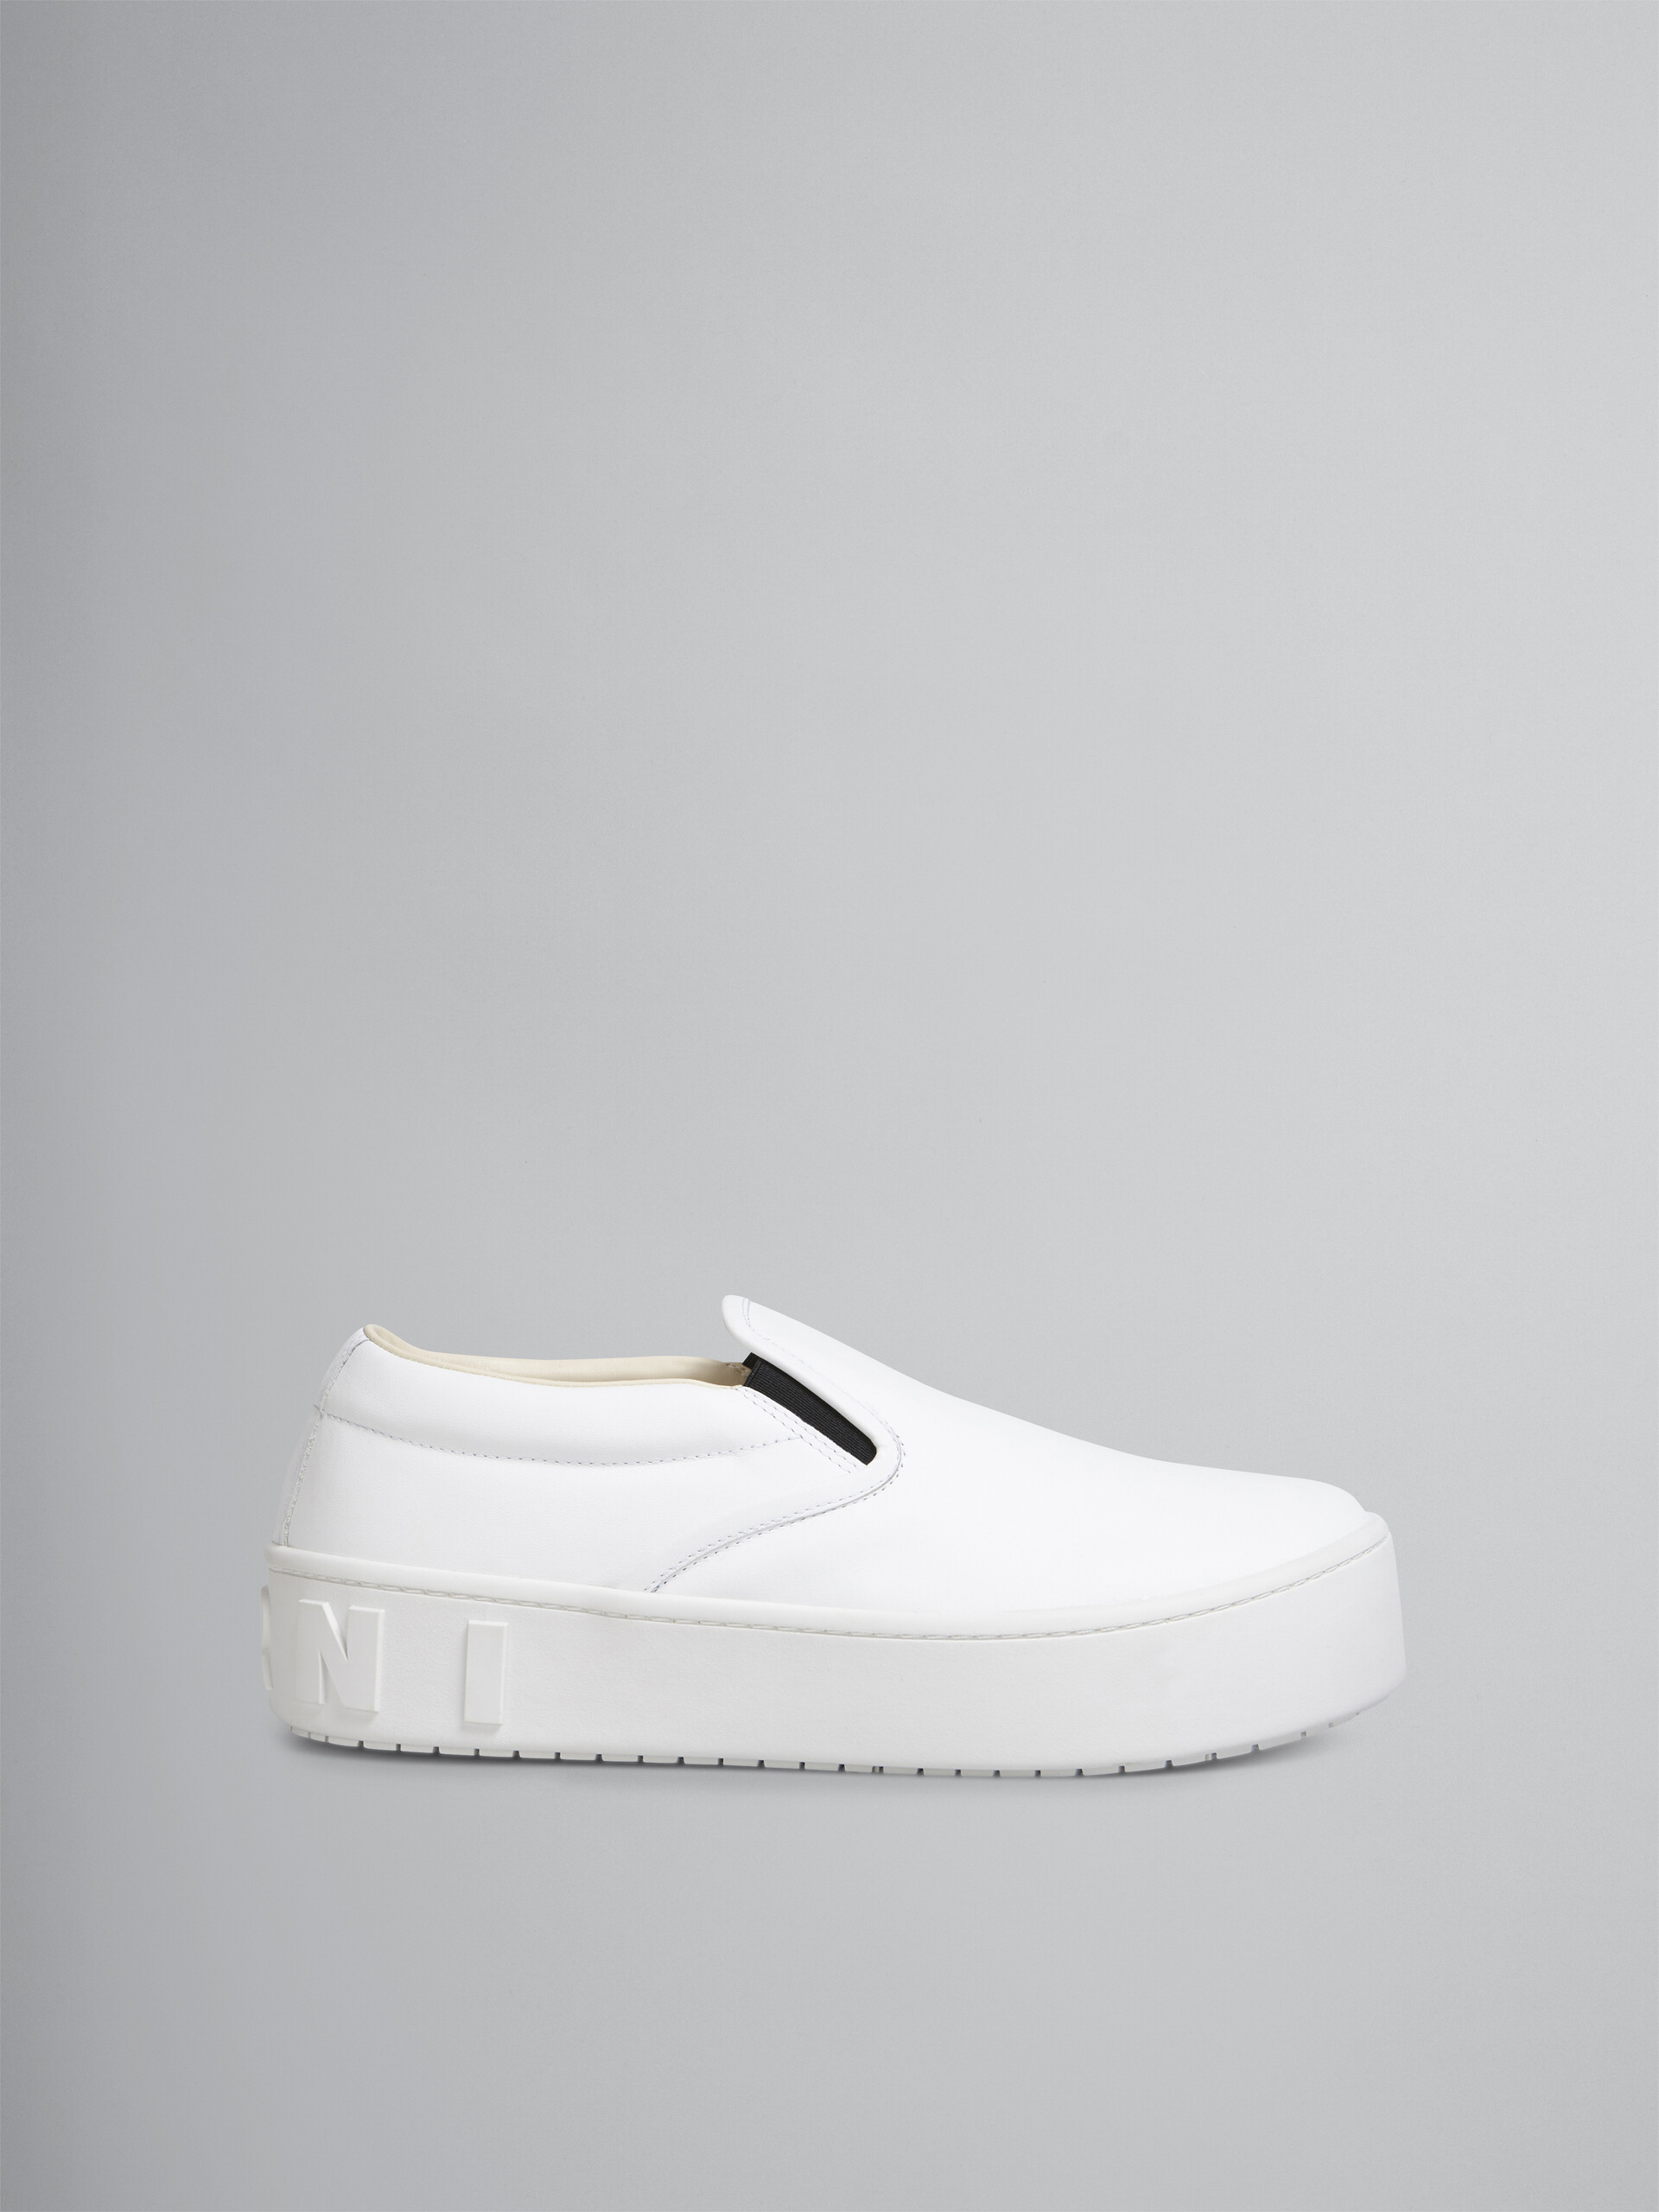 Slip-on-Sneaker aus weißem Kalbsleder mit hervorgehobenem Marni Maxi-Logo - Sneakers - Image 1